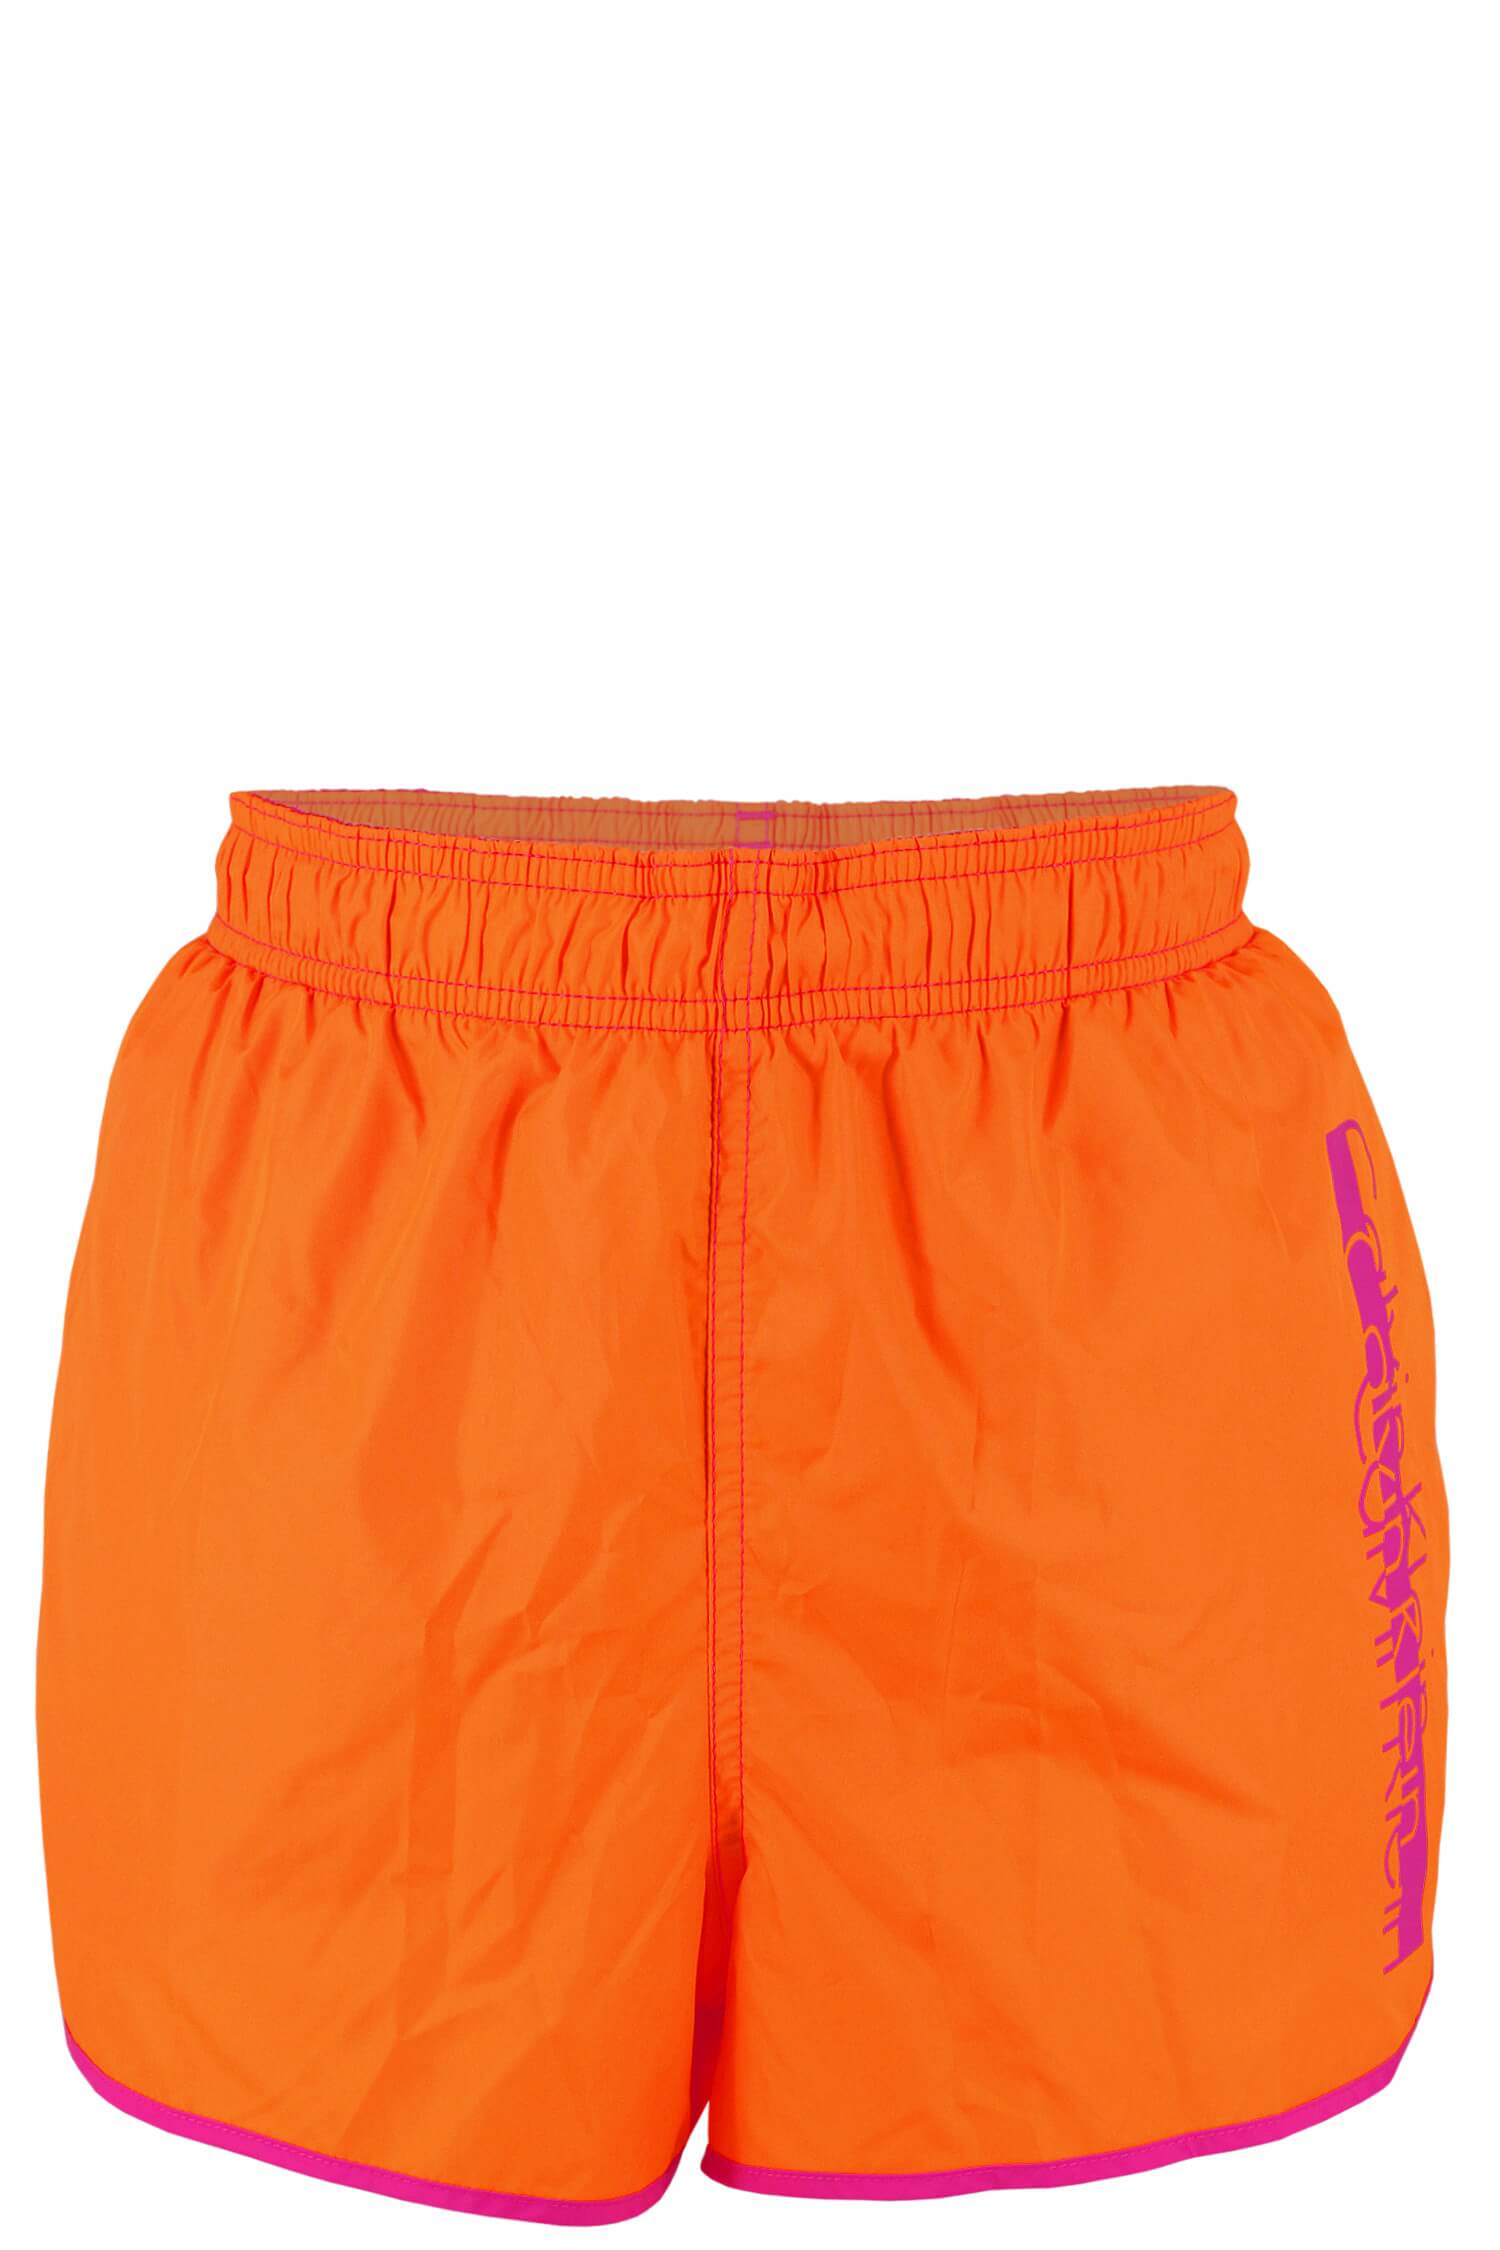 Calvin Klein dámské kraťasy XL oranžová zářivá